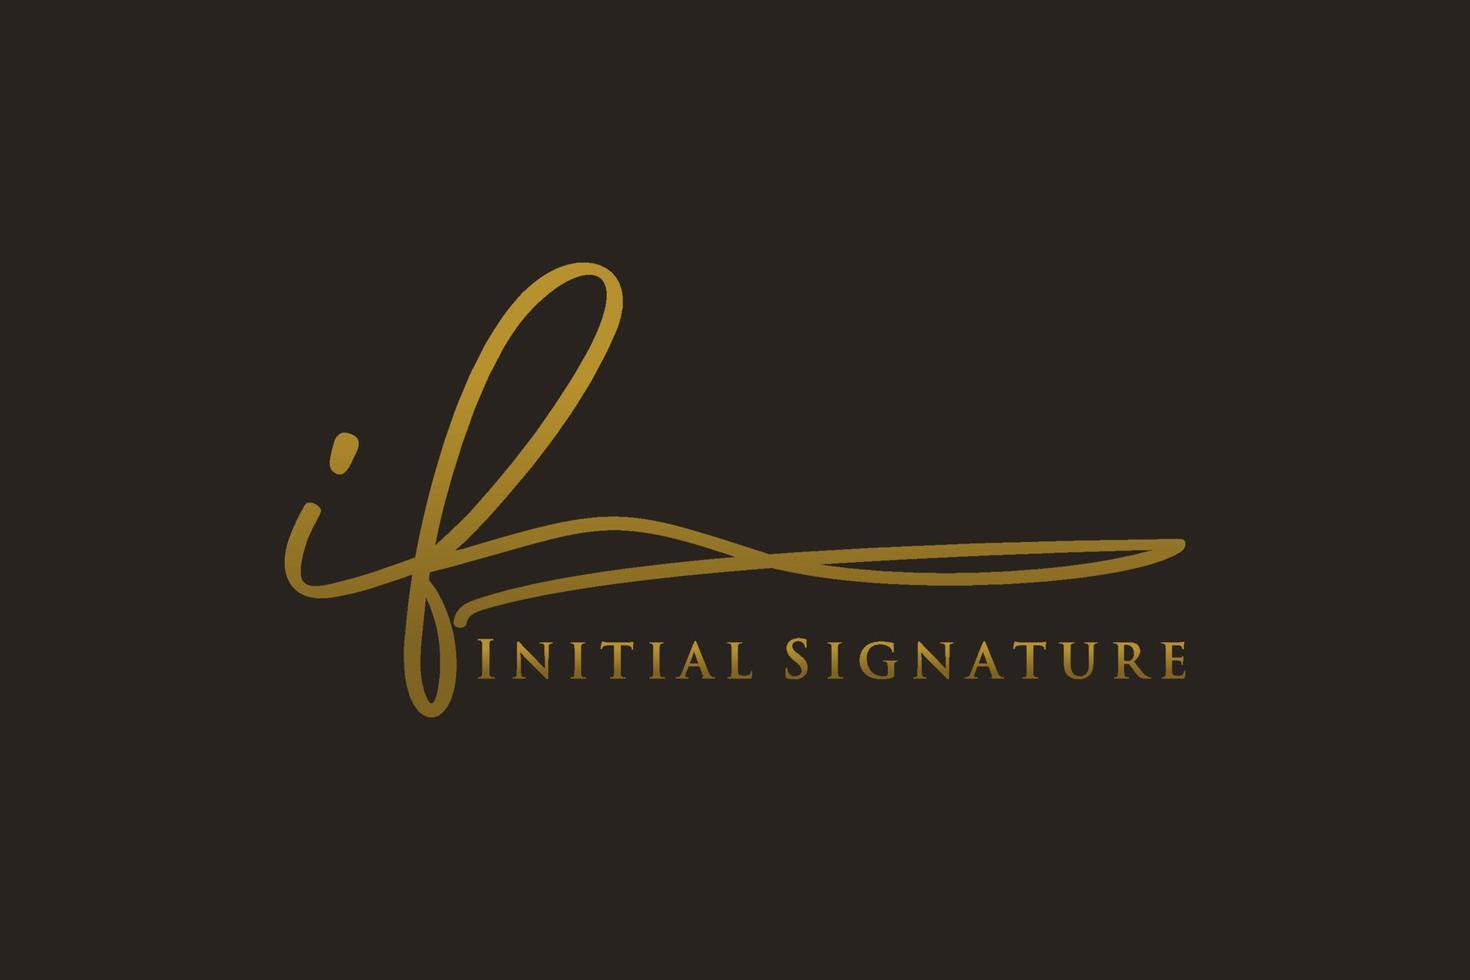 plantilla de logotipo de firma de letra inicial si logotipo de diseño elegante. ilustración de vector de letras de caligrafía dibujada a mano.